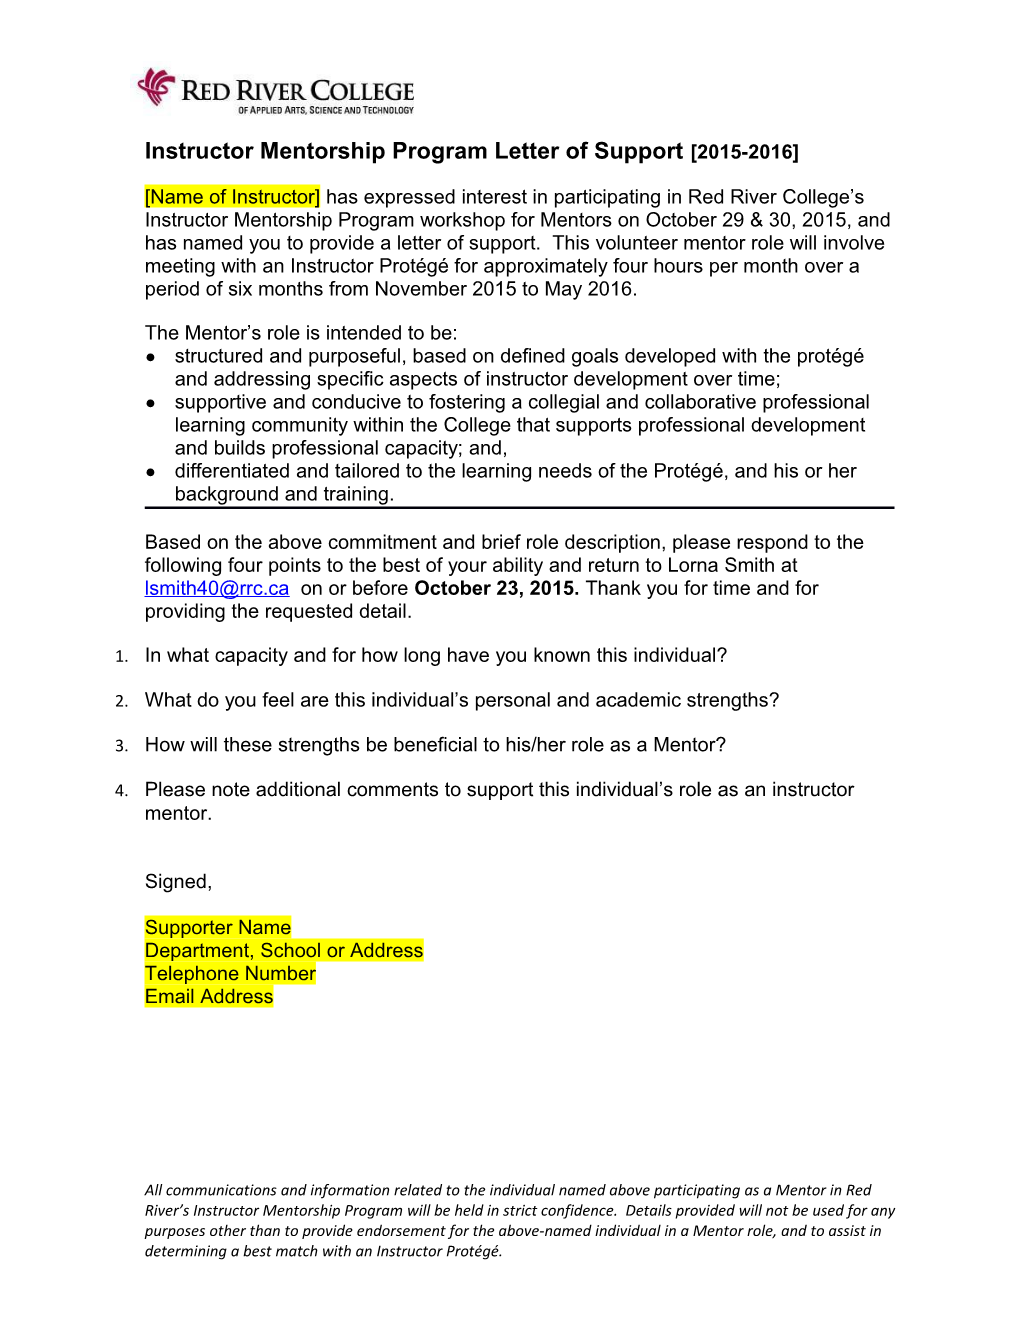 Letter of Support for Mentors June 27 2014